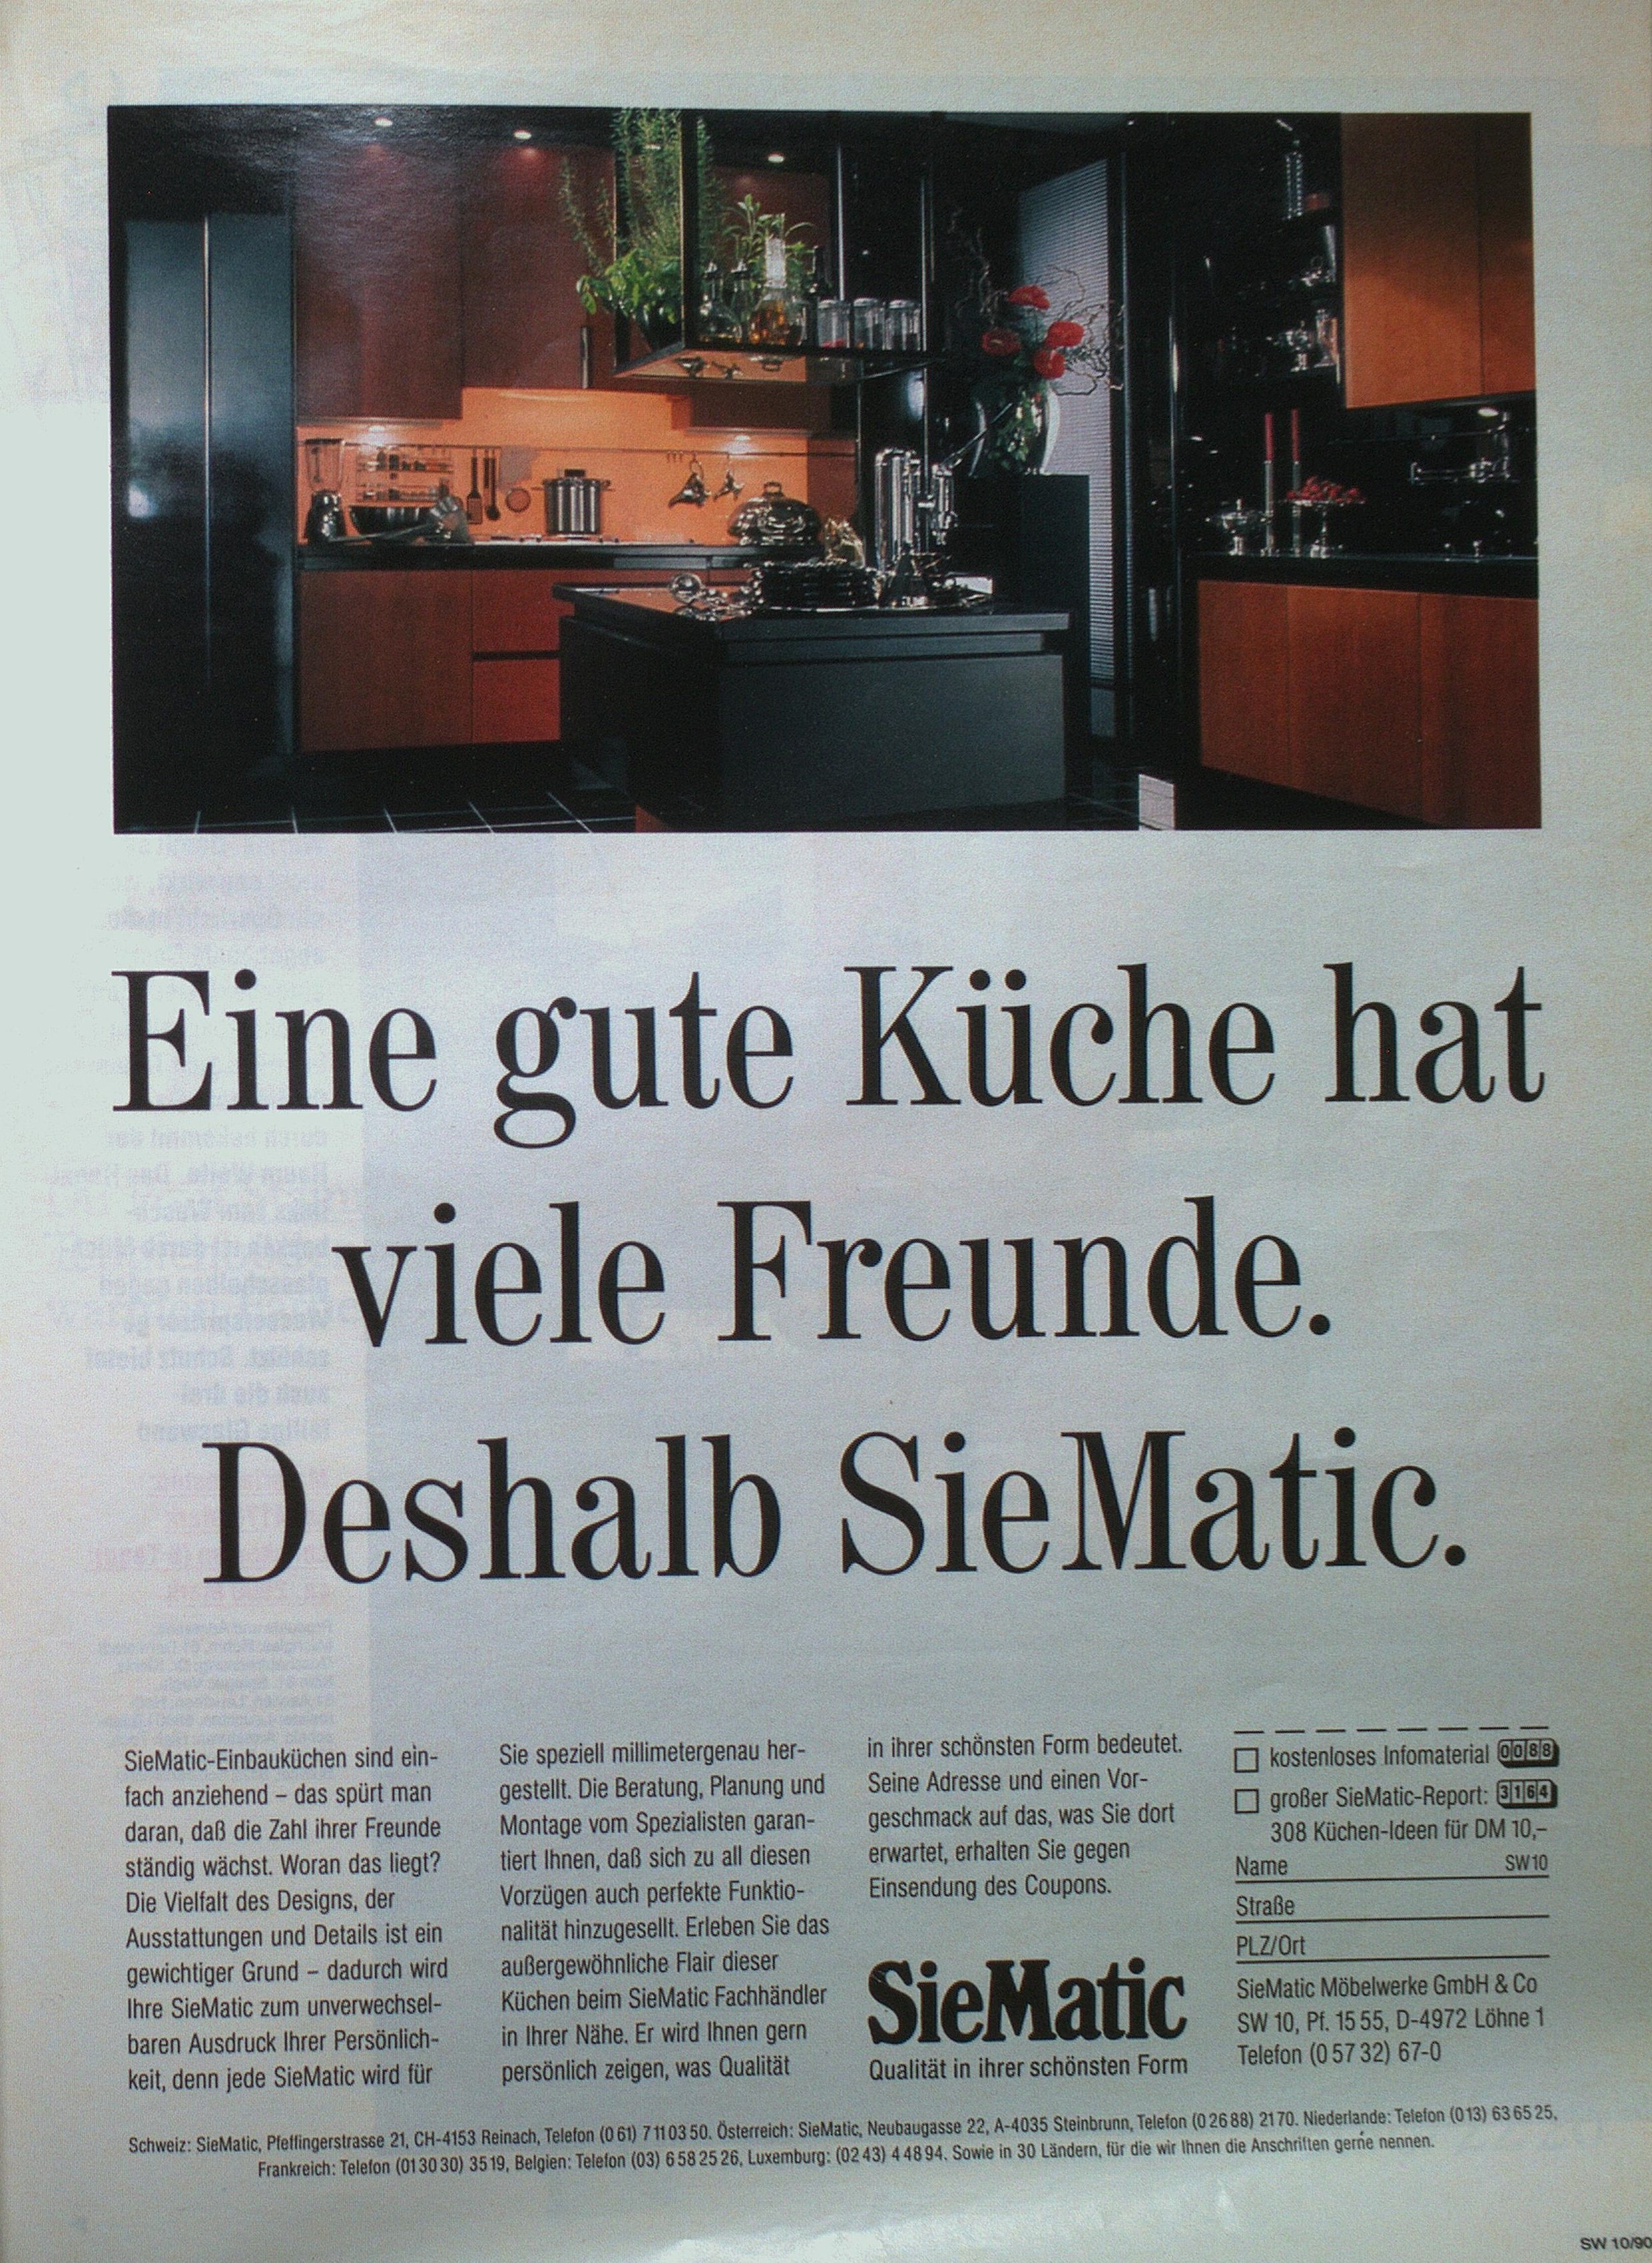 Zu sehen ist eine Werbeanzeige der Firma SieMatic in der Zeitschrift Schöner Wohnen von Oktober 1990.